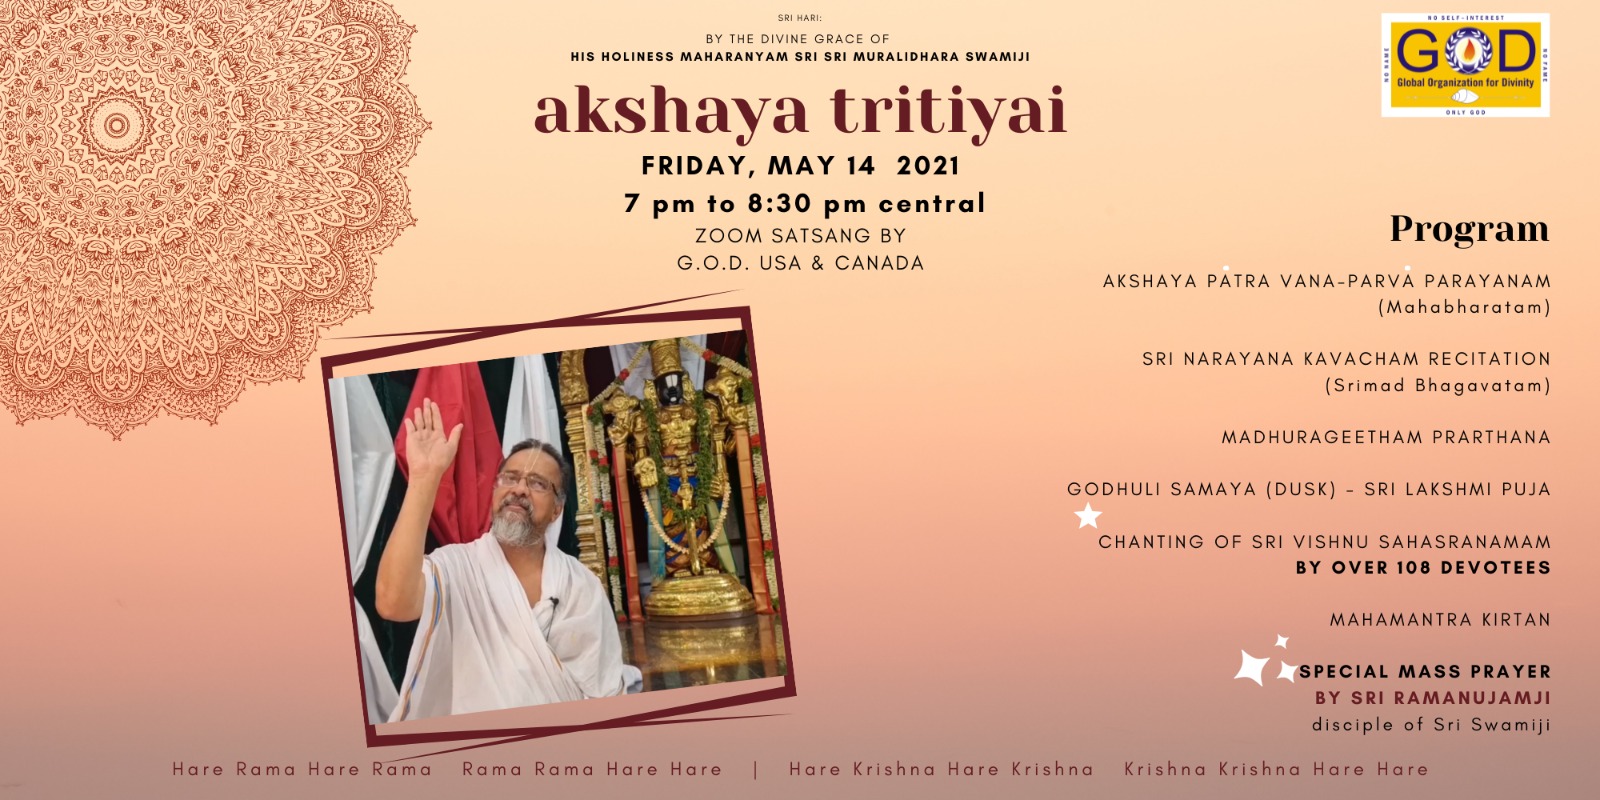 Akshaya Trithiyai 2021 - GOD North America celebrations